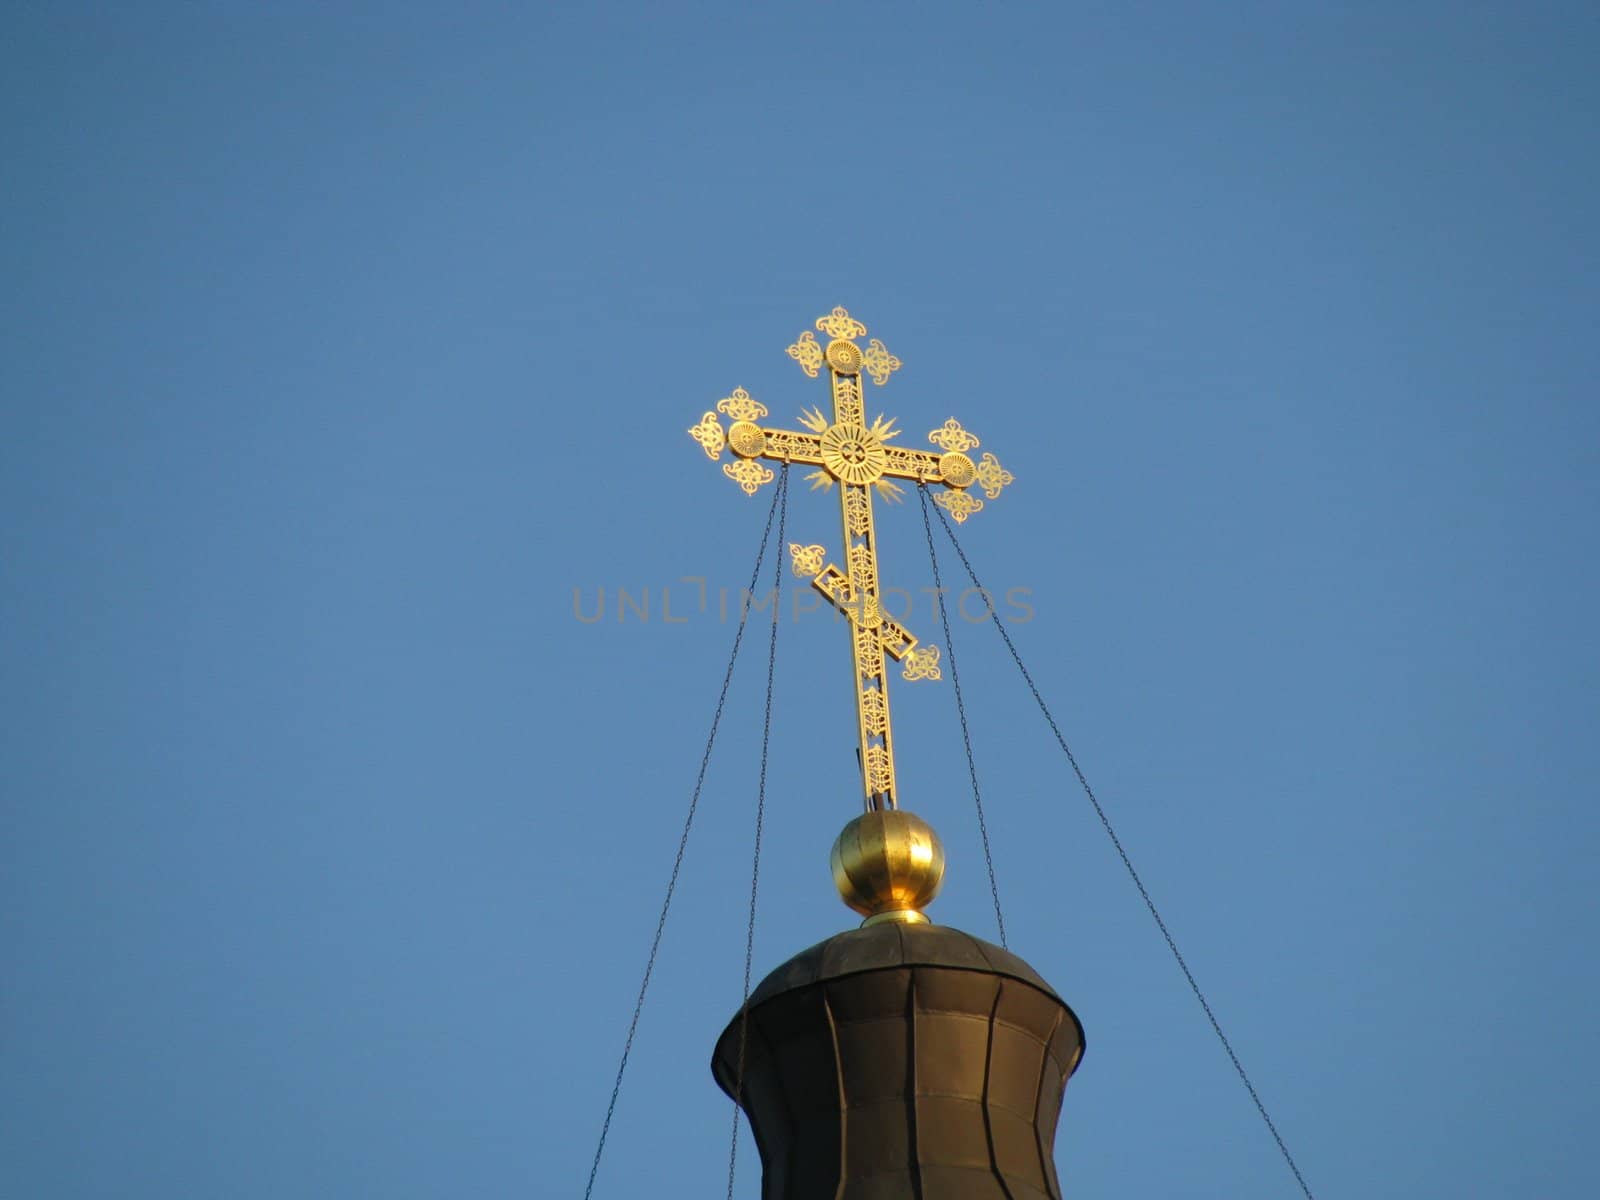 Cross, gold(en), blue sky, church; Christianity; saint place; temple, religion; faith; orthodoxy; dome, symbol